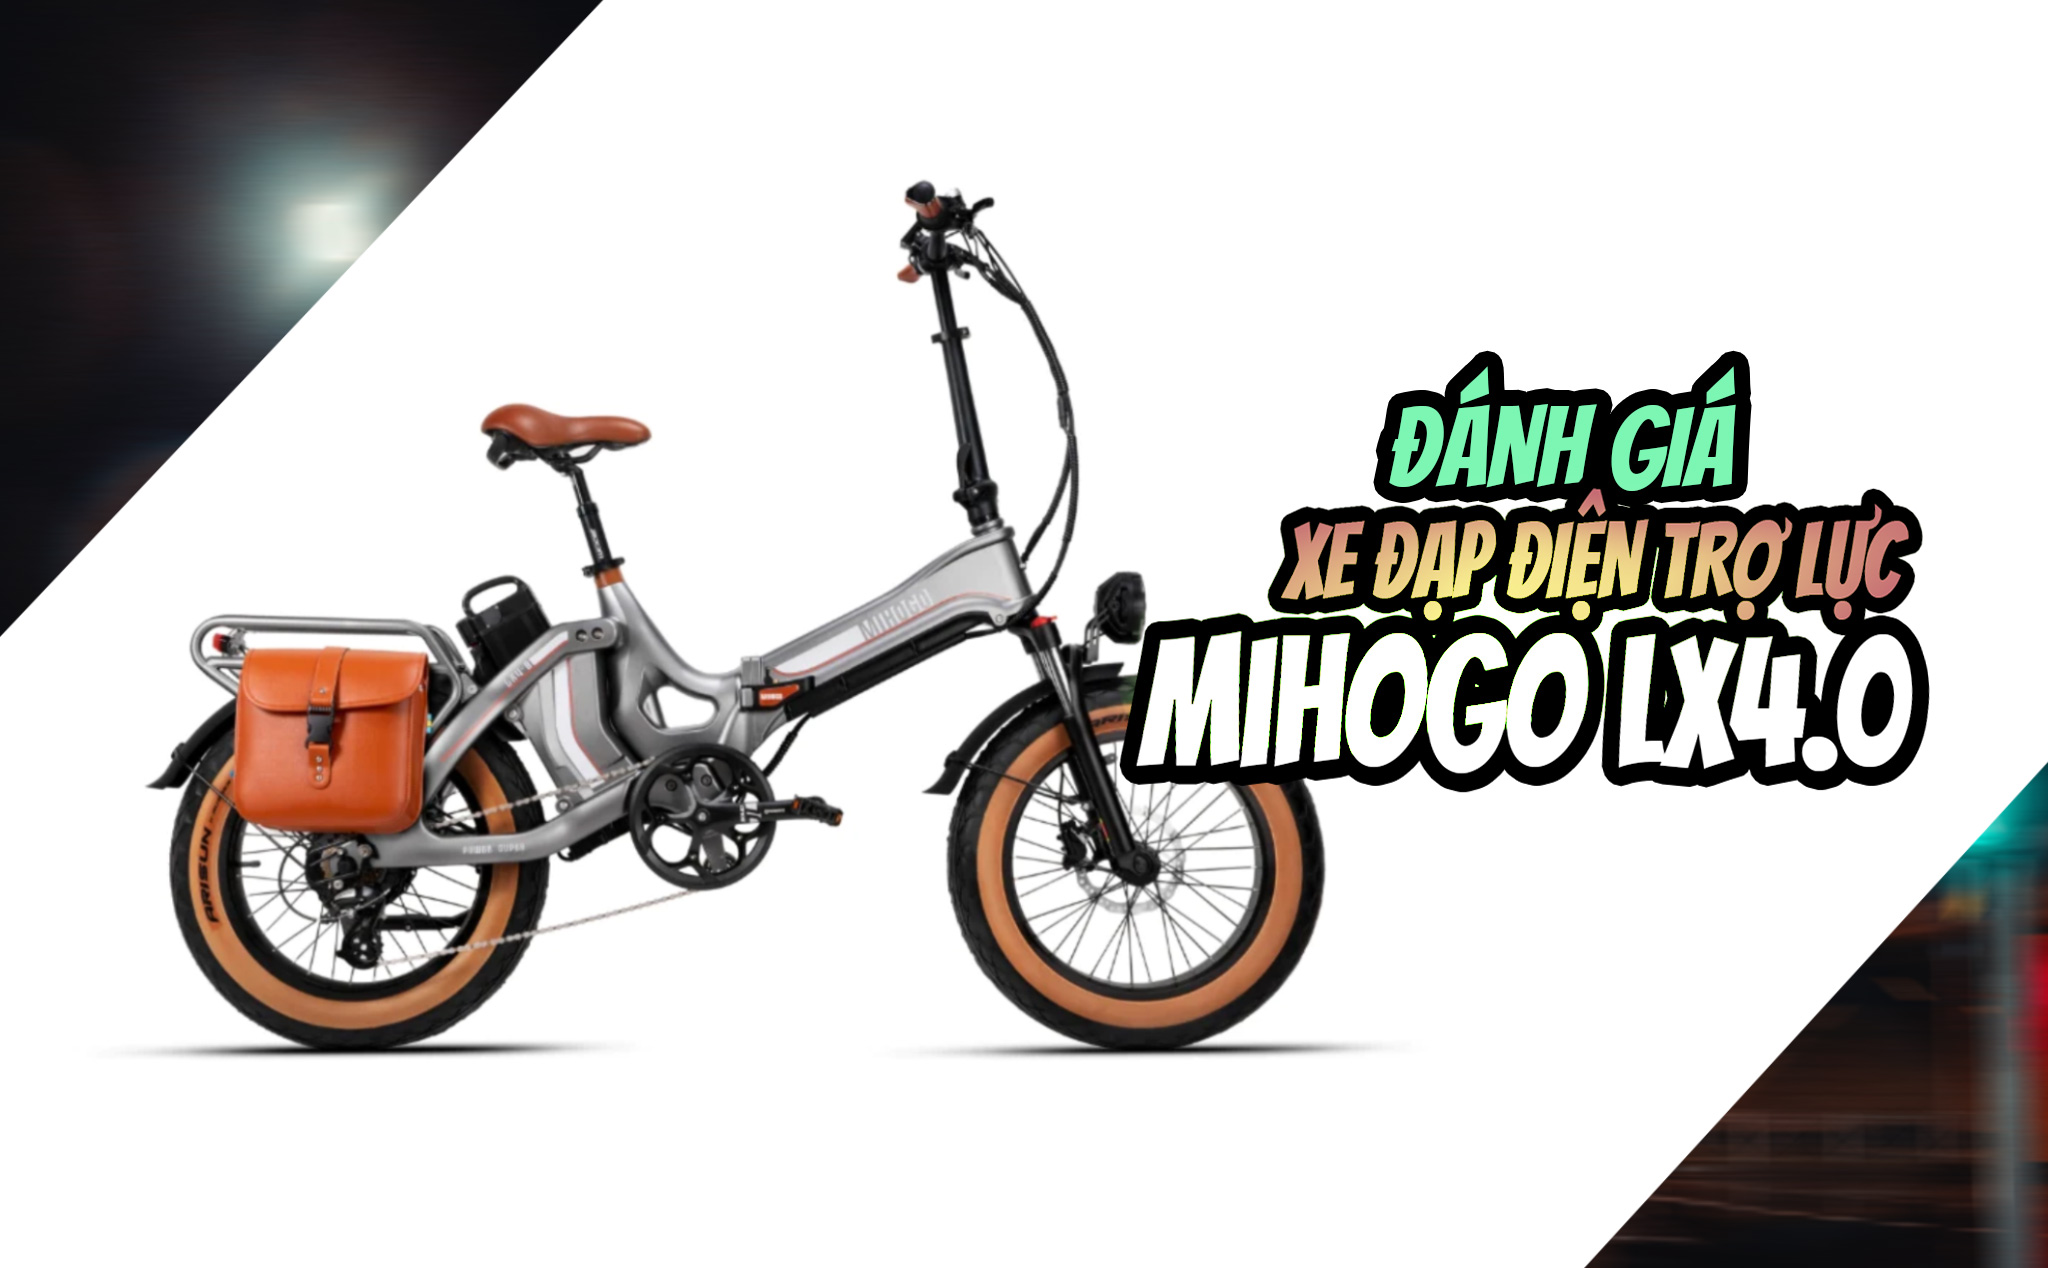 Đánh giá xe đạp điện trợ lực Mihogo LX4.0 - Động cơ và pin khoẻ